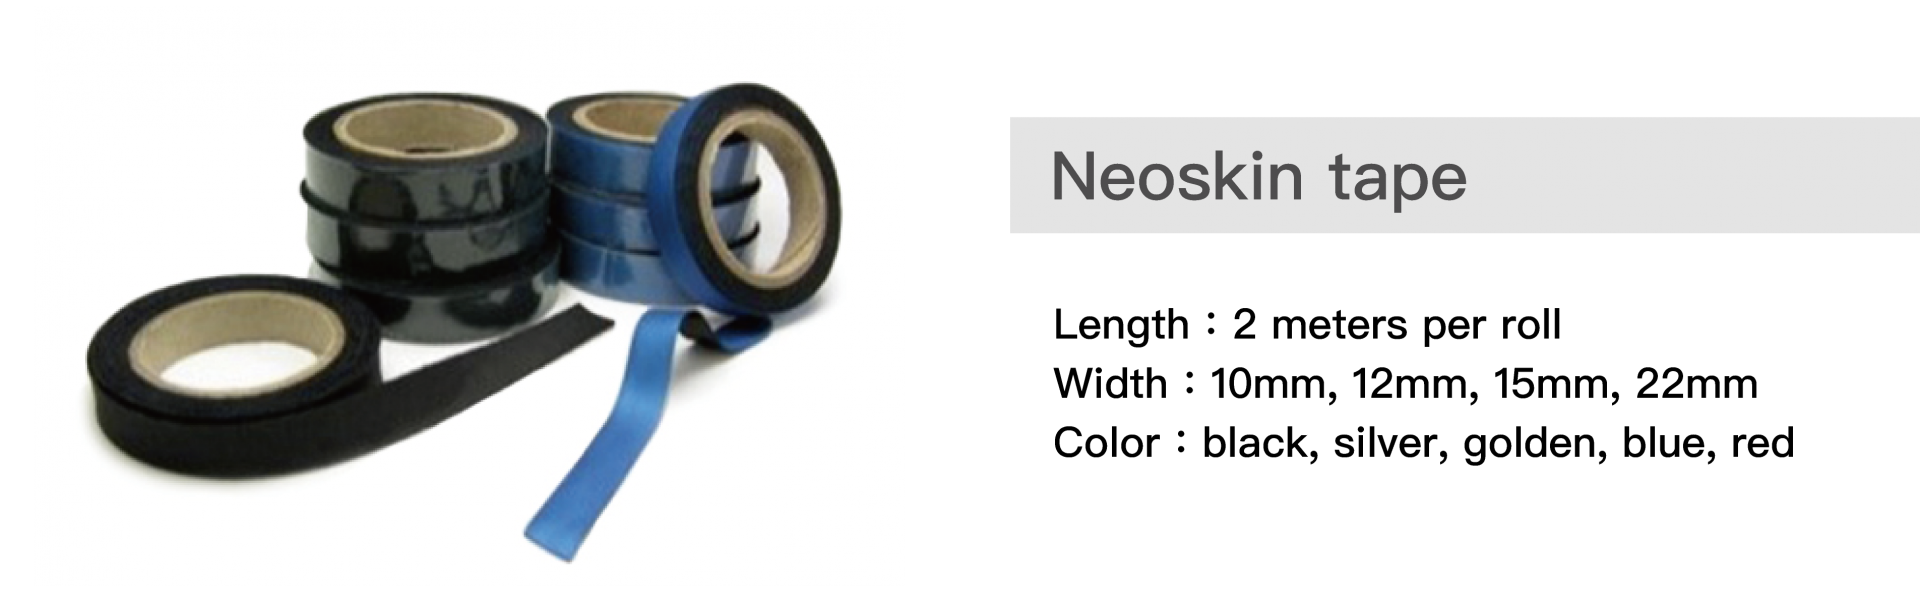 Especificación de cinta Neoskin